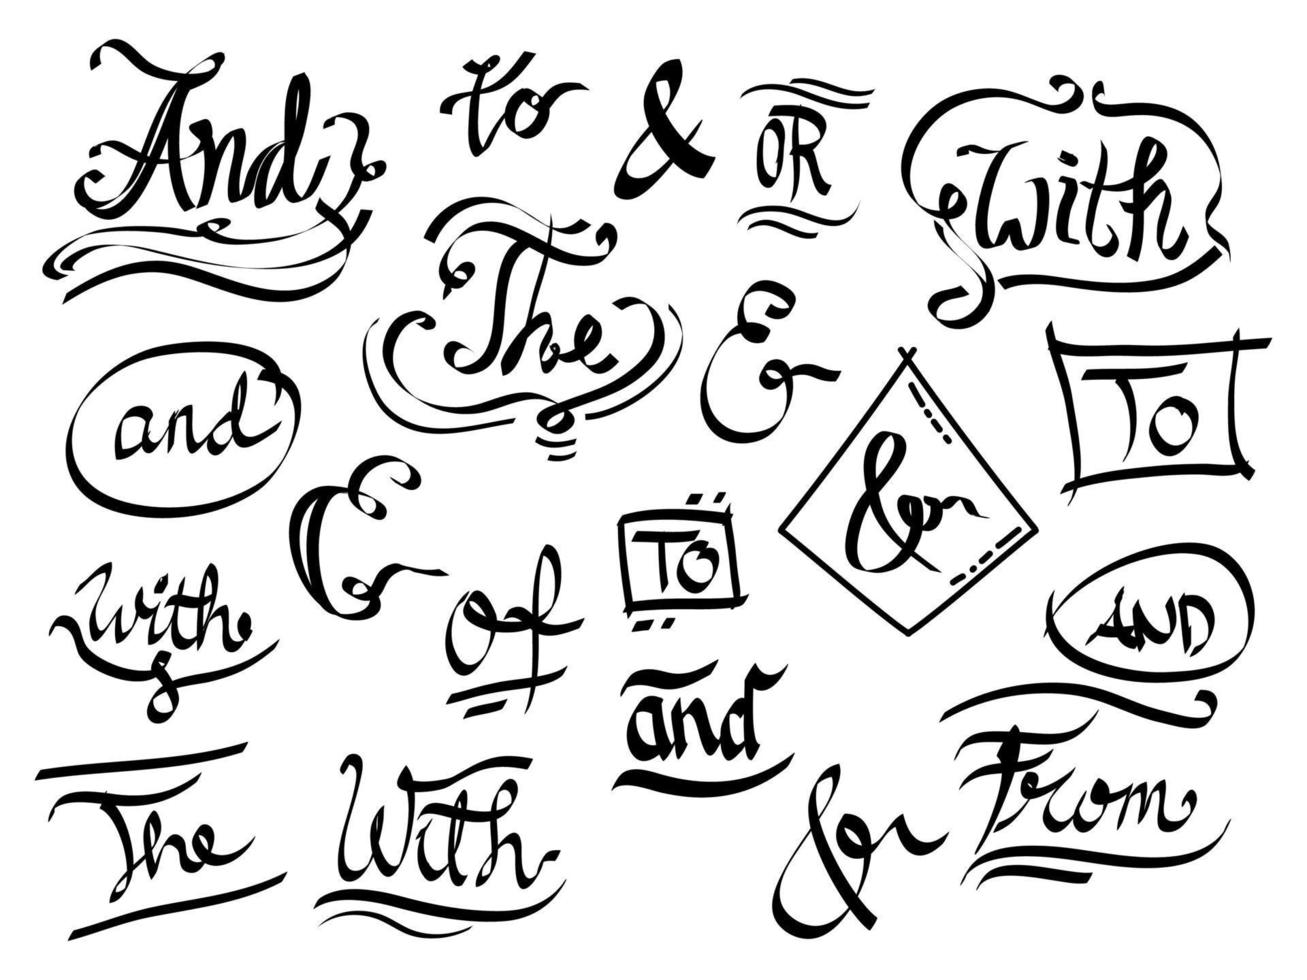 ensemble d'éléments de conception de mots clés et d'esperluettes dessinés à la main. illustration vectorielle de griffonnage vecteur